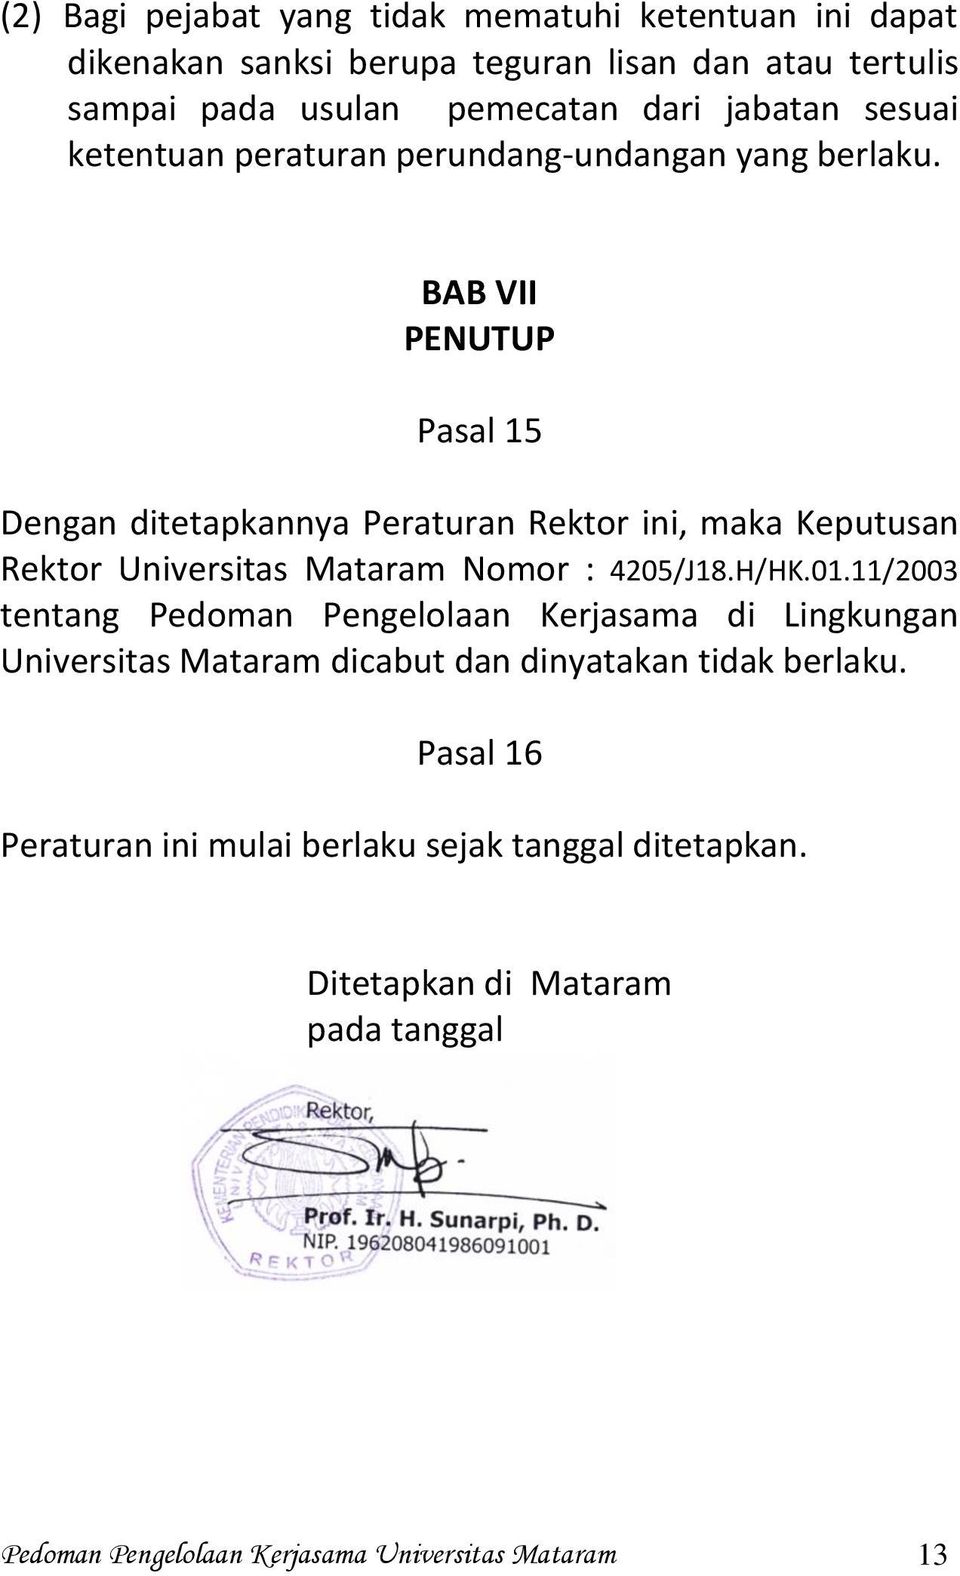 BAB VII PENUTUP Pasal 15 Dengan ditetapkannya Peraturan Rektor ini, maka Keputusan Rektor Universitas Mataram Nomor : 4205/J18.H/HK.01.